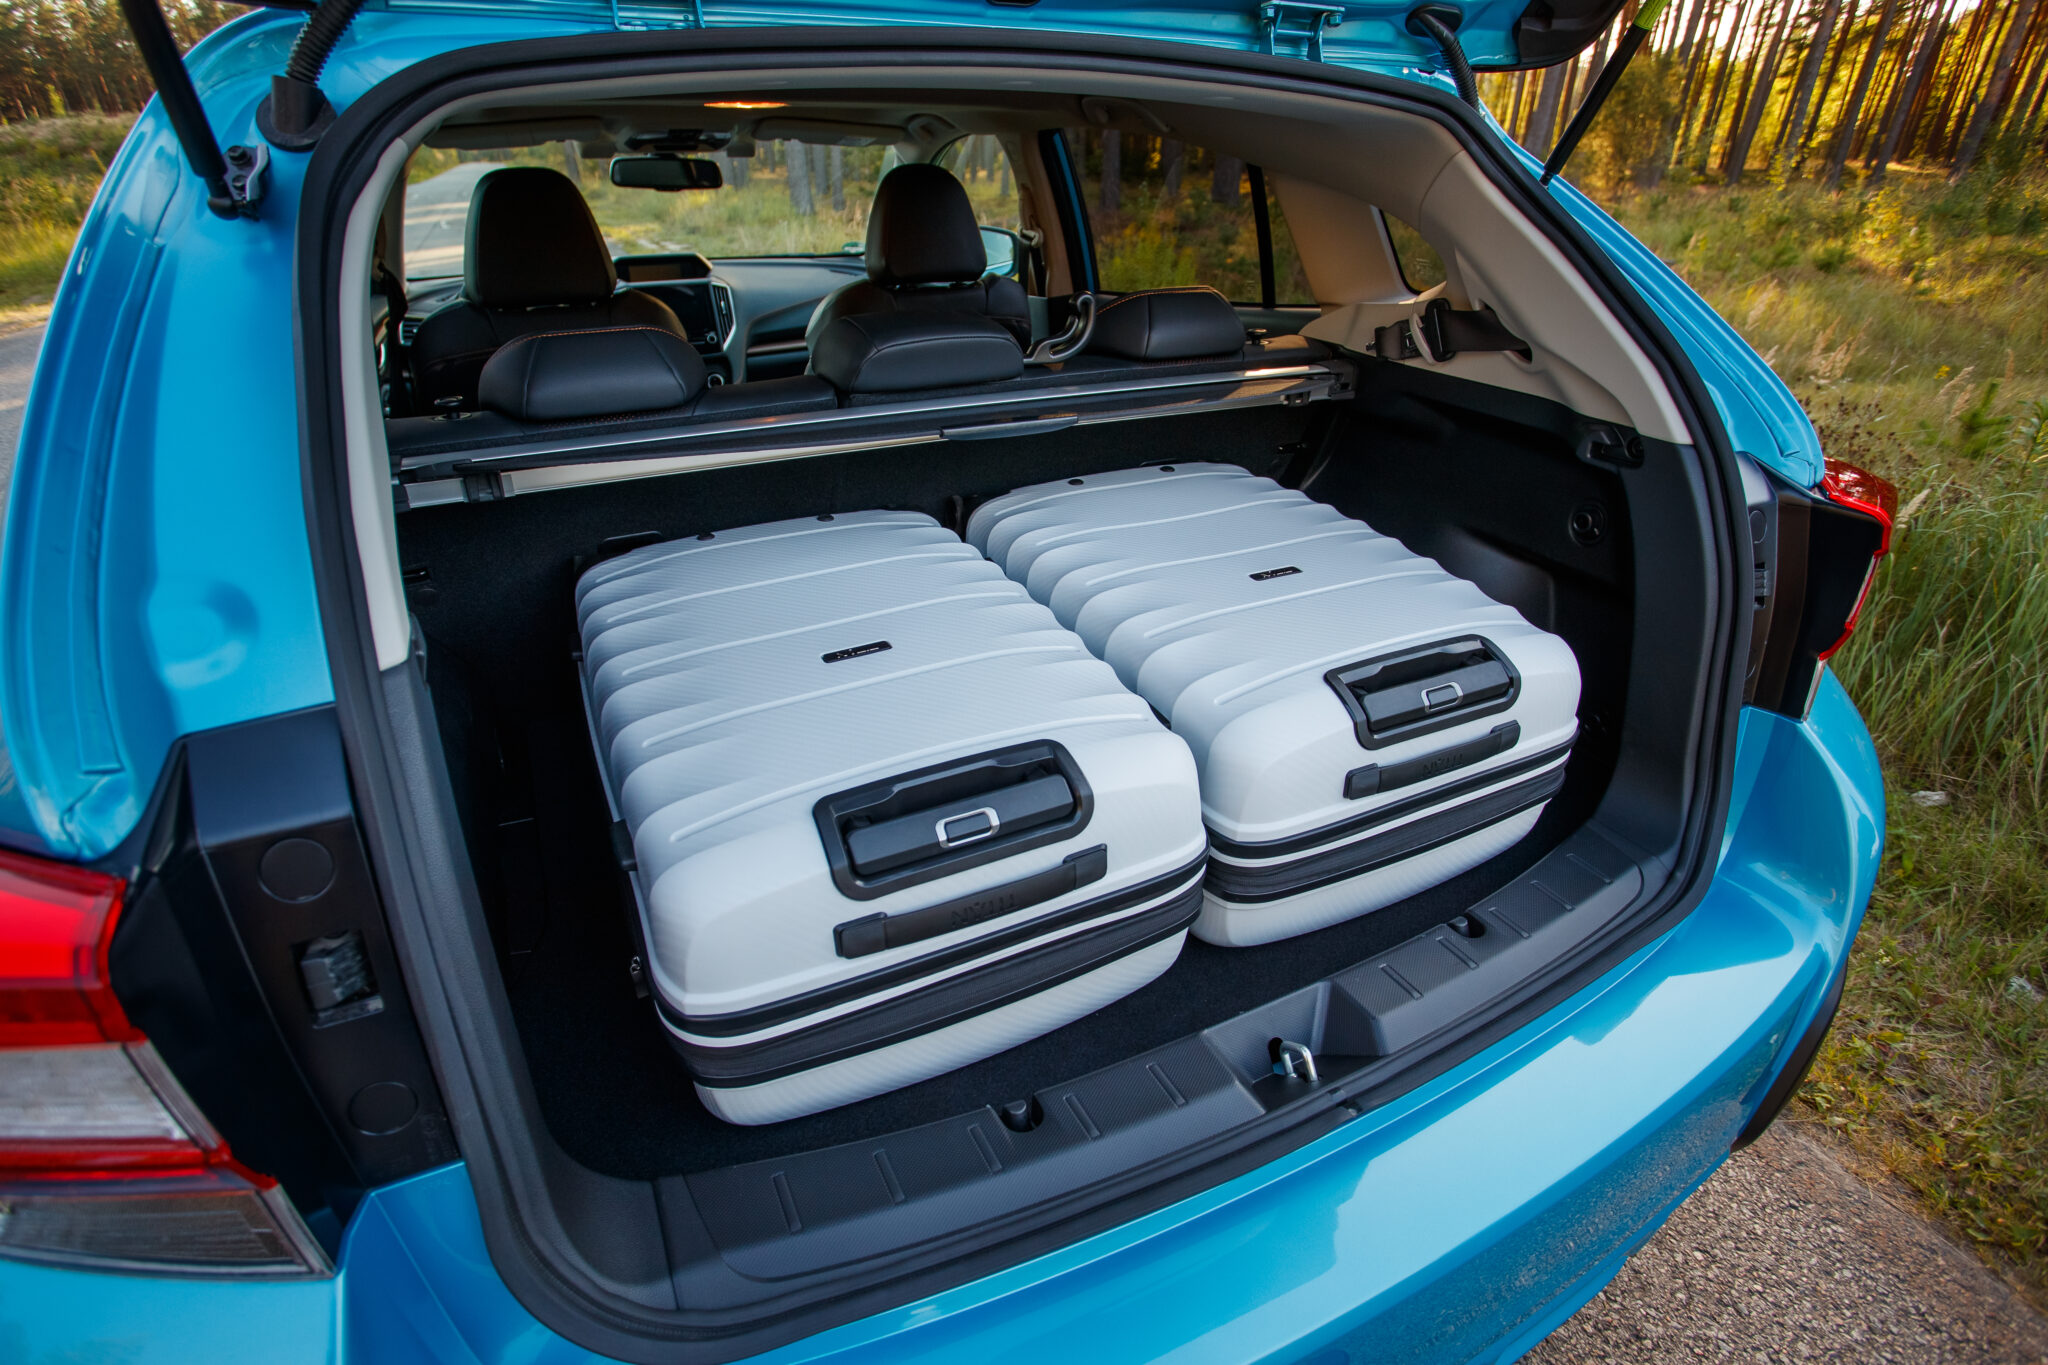 Maletero Subaru XV Hybrid scaled - Prueba Subaru XV Eco Hybrid 2020: Un SUV híbrido, económico y con grandes cualidades off-road